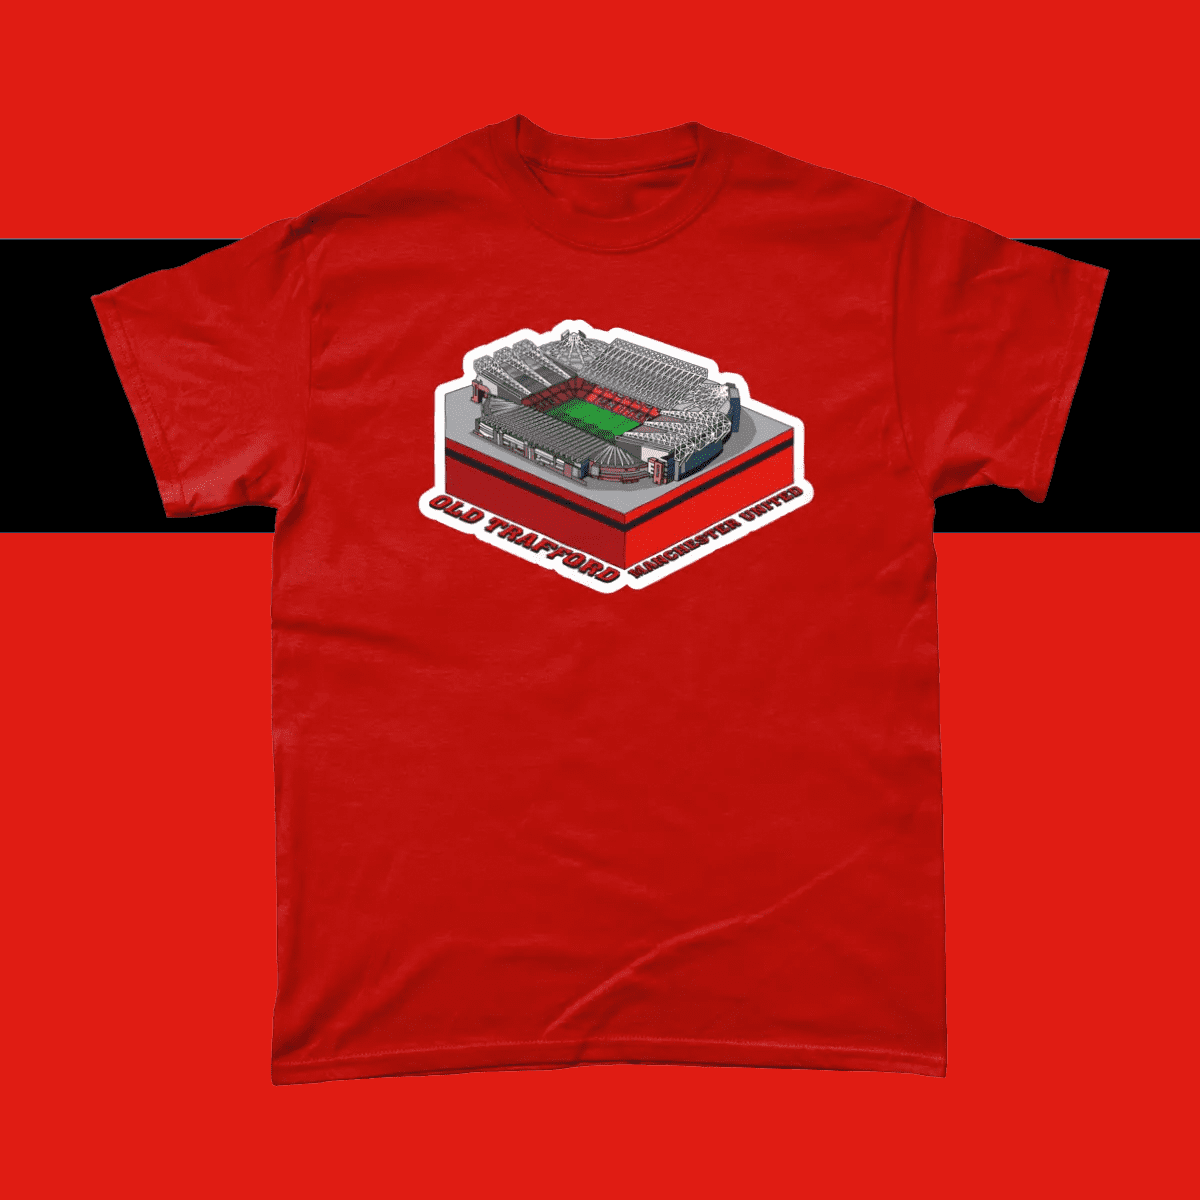 Manchester United Old Trafford Football Stadium Illustration Men's T-Shirt Red